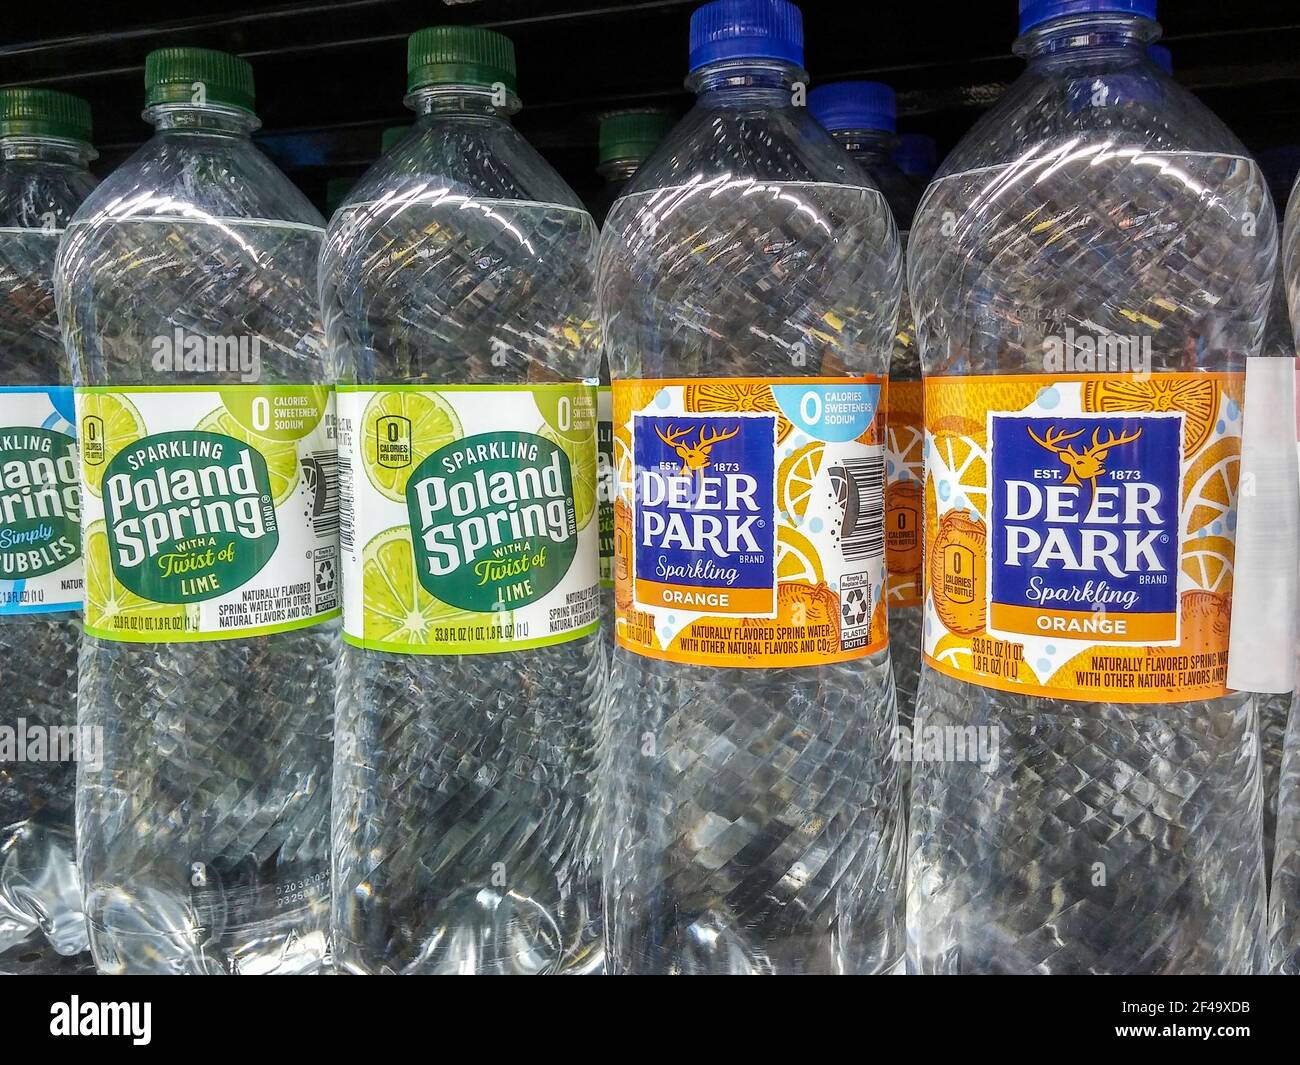 New York, Stati Uniti. 18 Marzo 2021. Bottiglie di Polonia acqua di marca  Primavera e Deer Park, in precedenza NestlÃPhoto da prodotti, in un  supermercato a New York giovedì 18 marzo 2021.